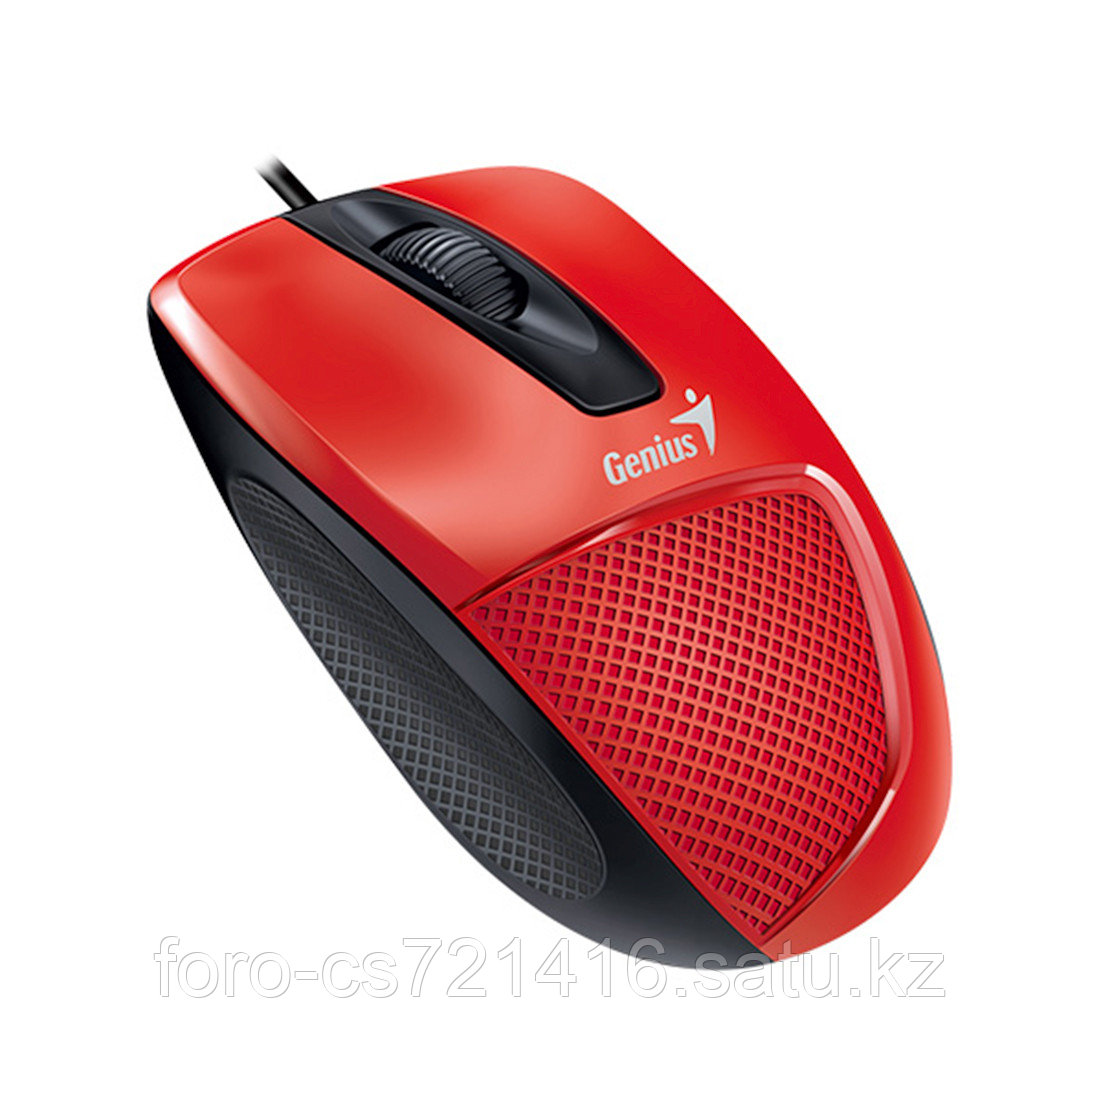 Компьютерная мышь Genius DX-150X Red, фото 1